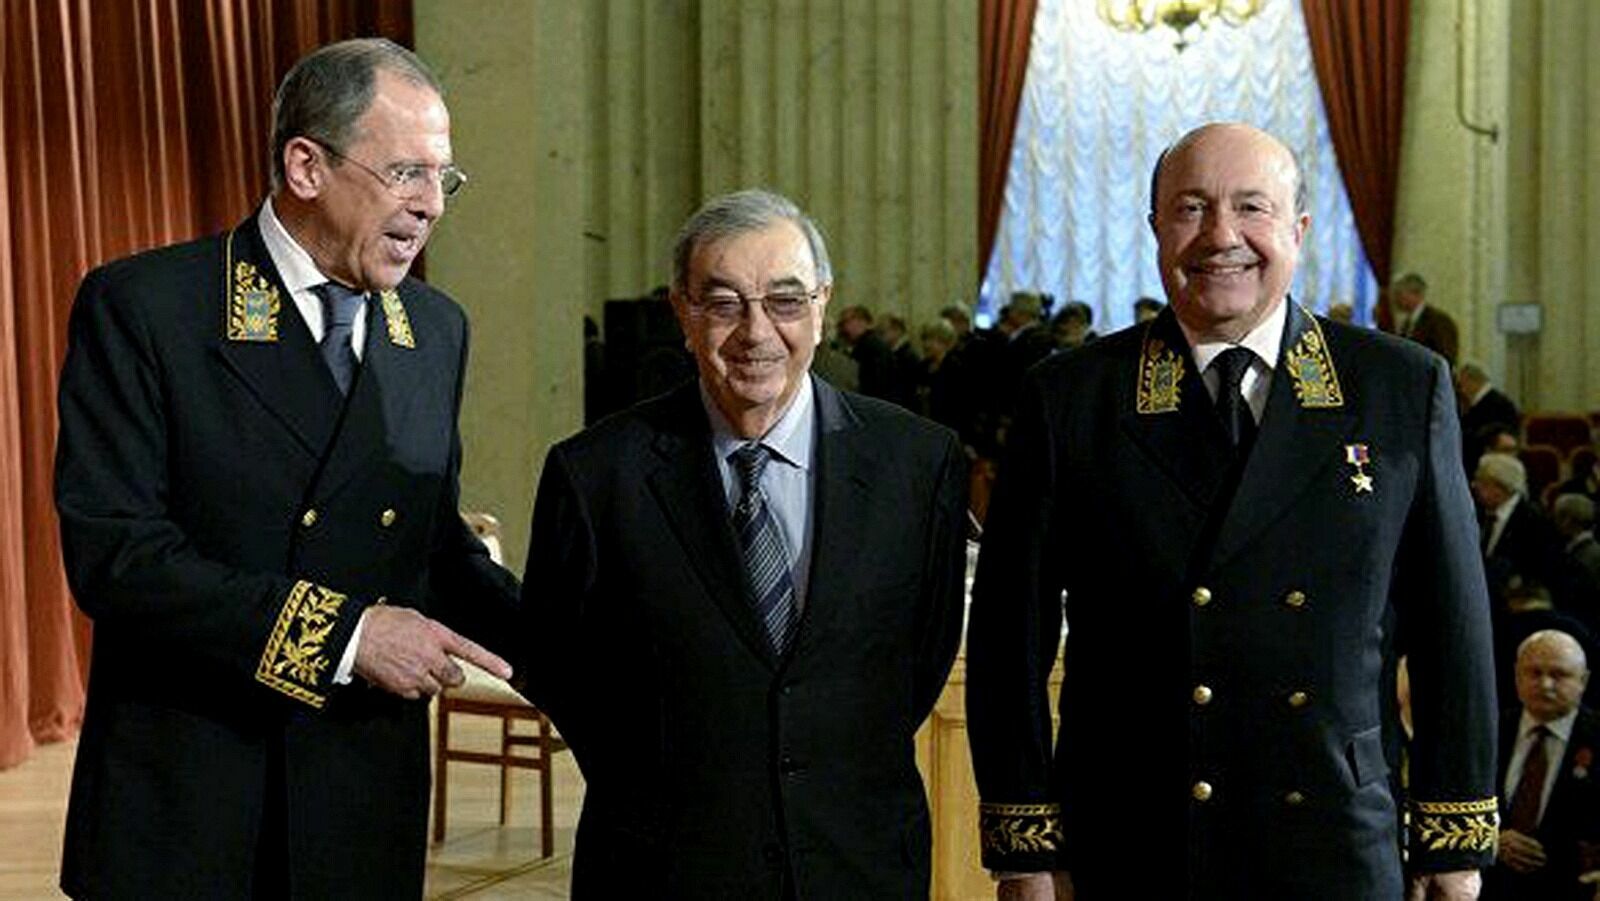 Министры иностранных дел России: Сергей Лавров, Евгений Примаков, Игорь Иванов.